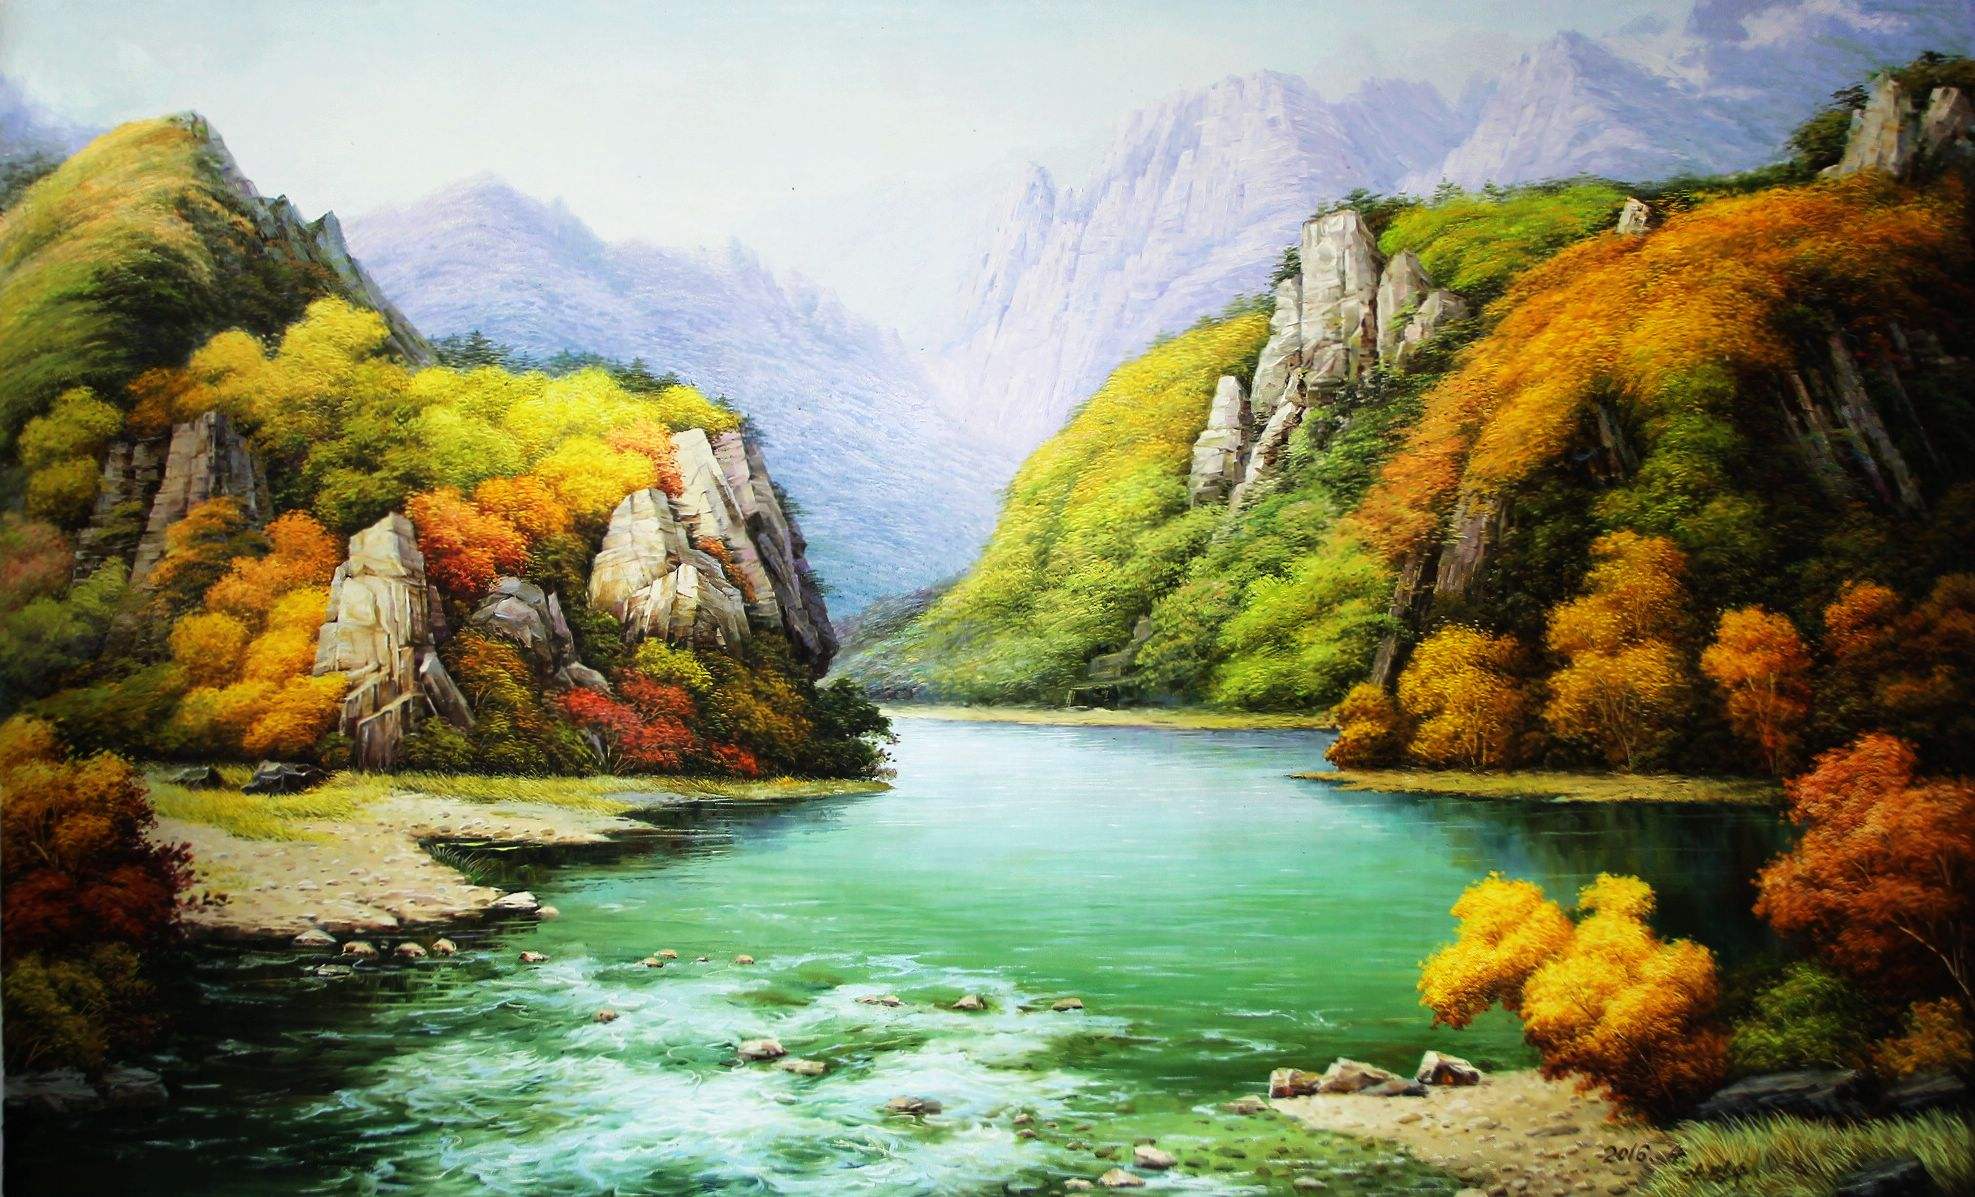 朝鲜油画山水图片欣赏,朝鲜油画山水图片鉴赏